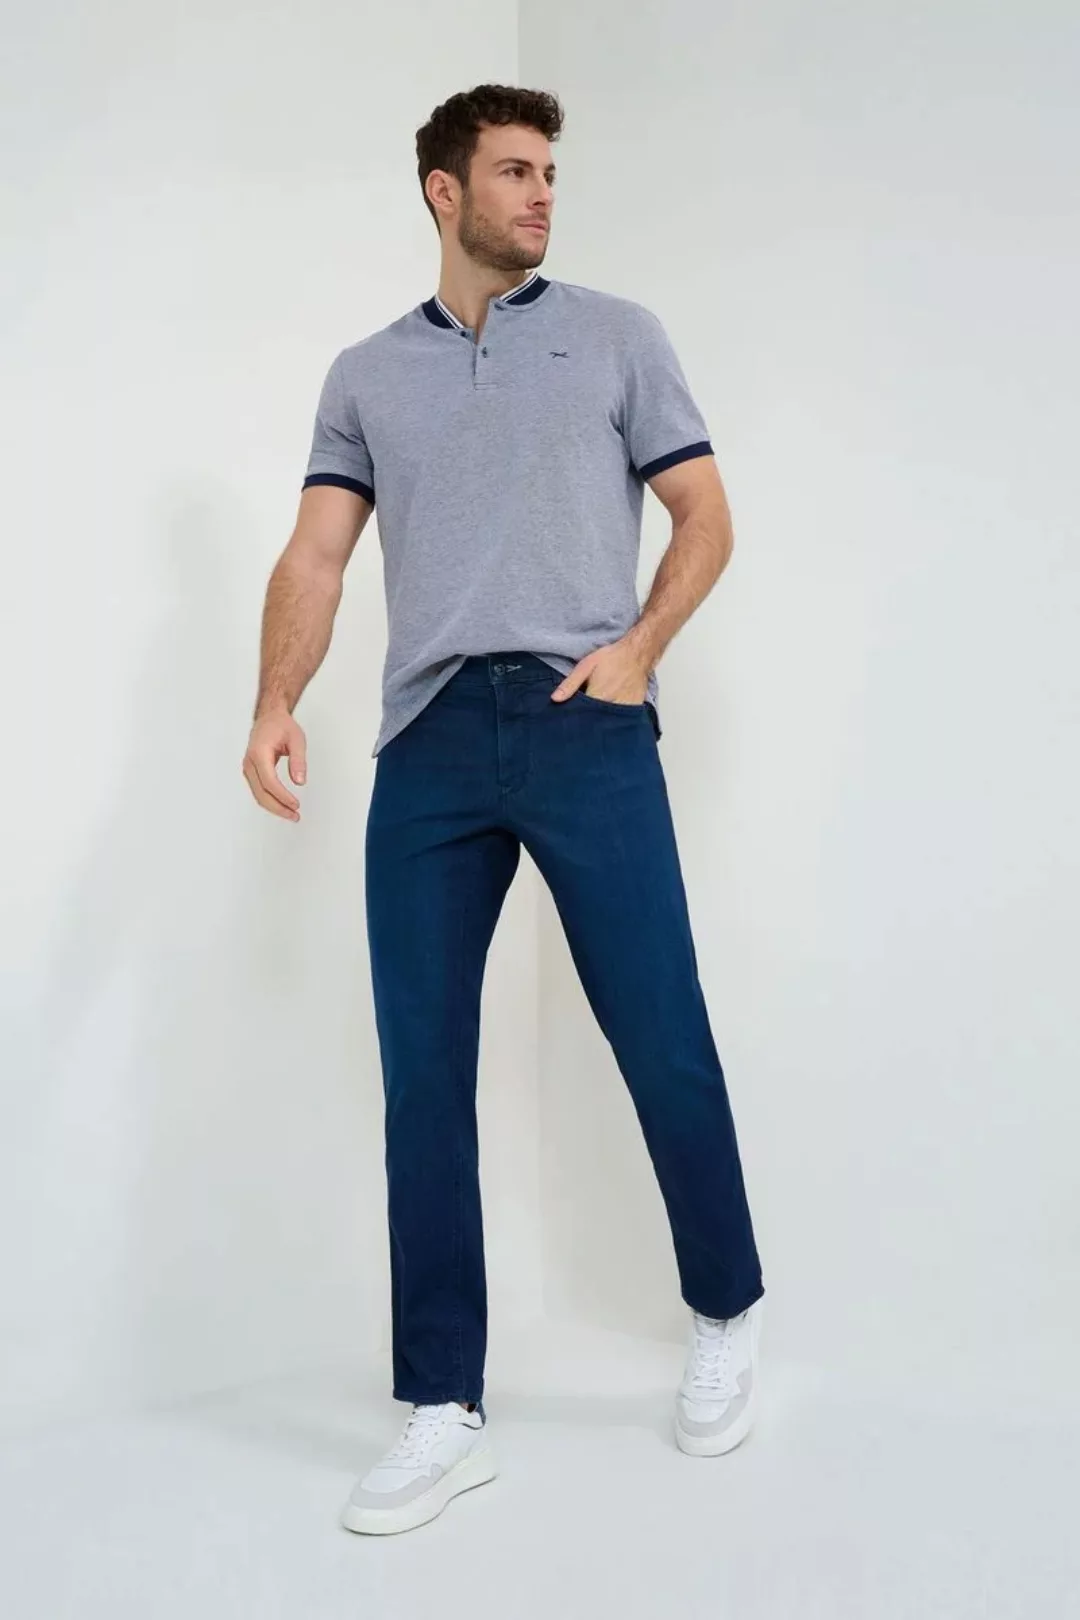 Brax Cooper Jeans Dunkelblau - Größe W 38 - L 32 günstig online kaufen